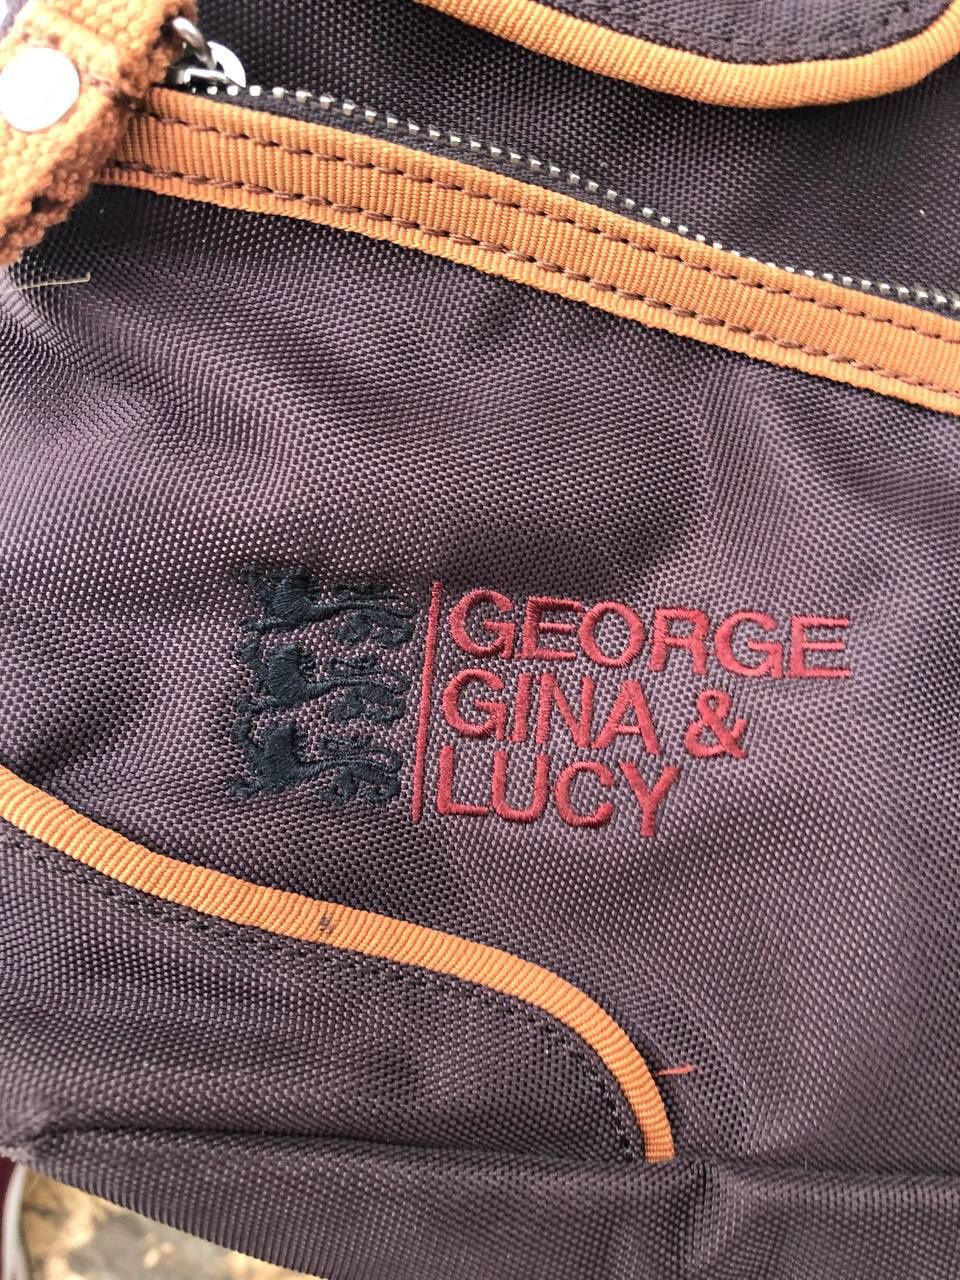 Сумка GGL/George Gina&lucy с карабином